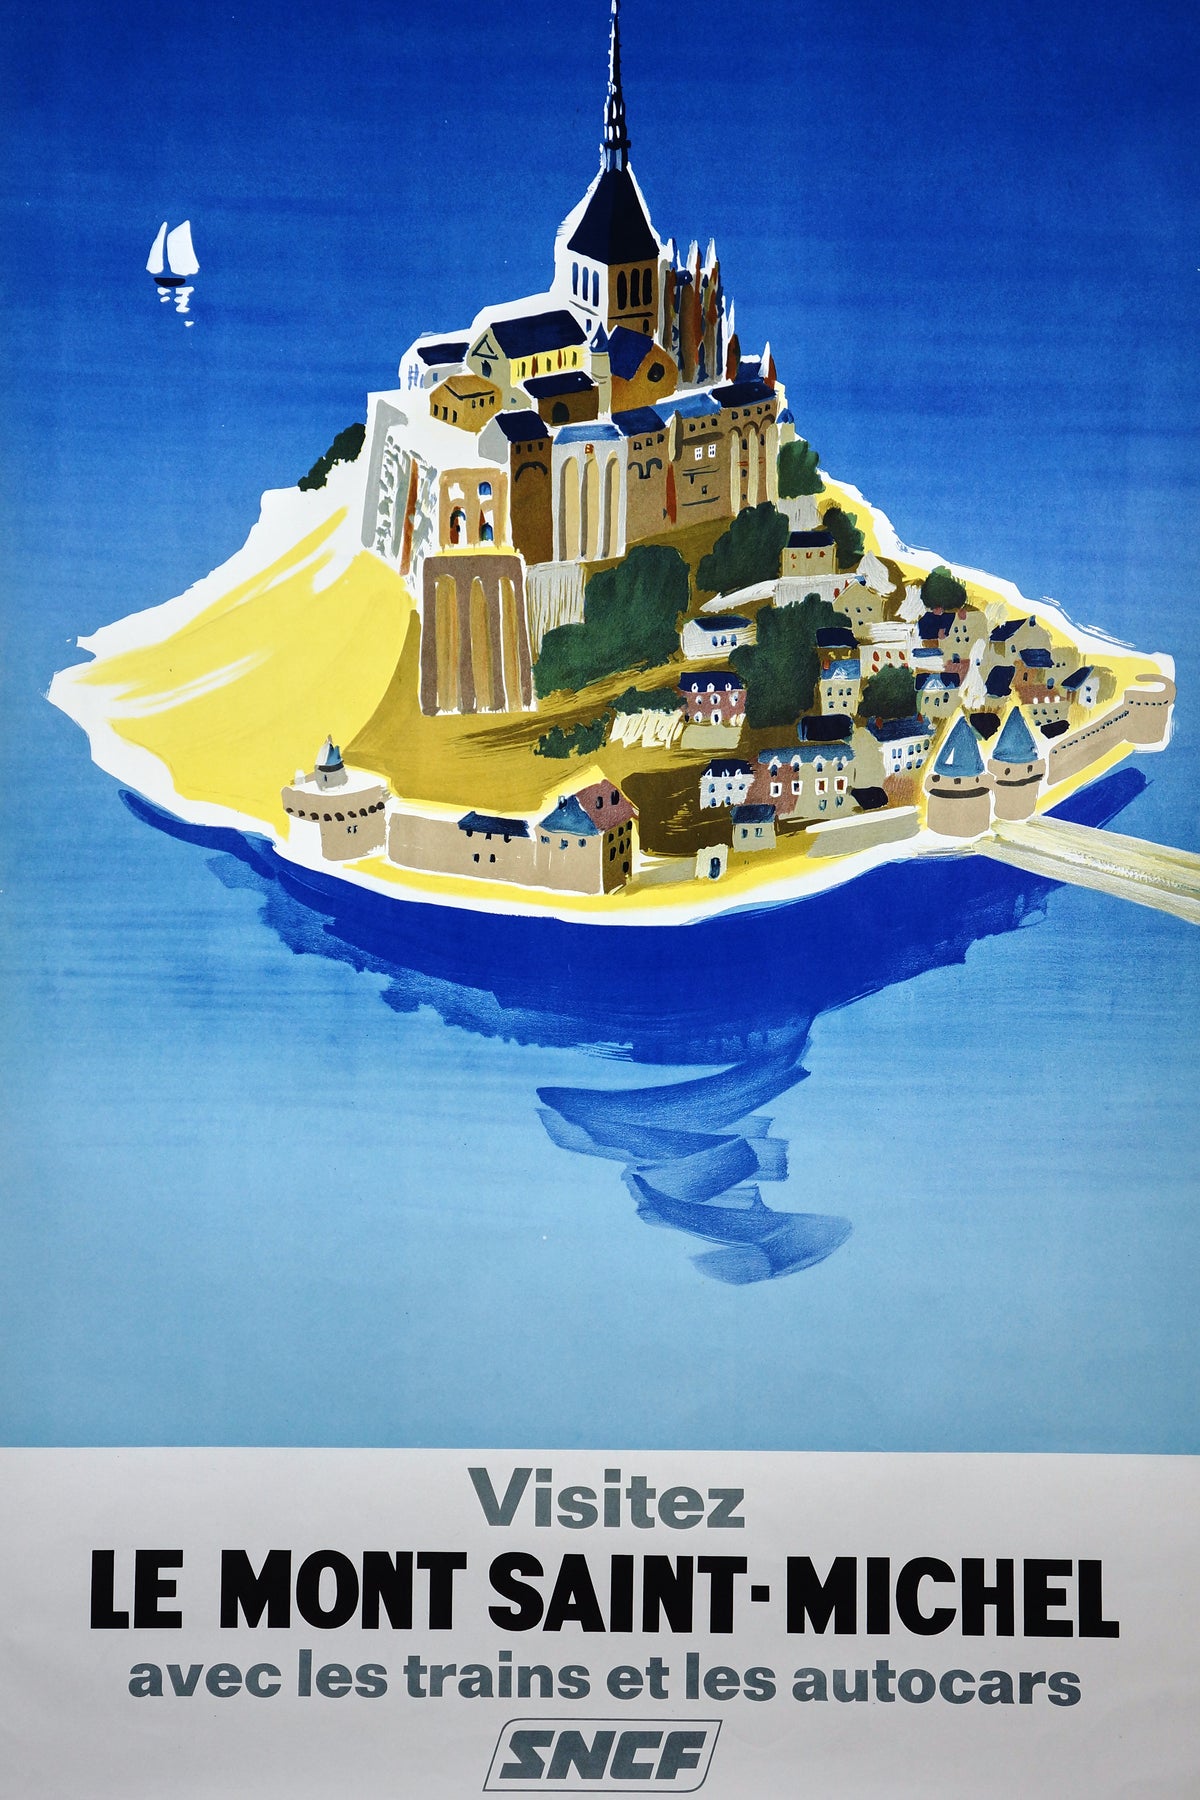 Visit Mont Saint-Michel by Villemot - Authentic Vintage Poster